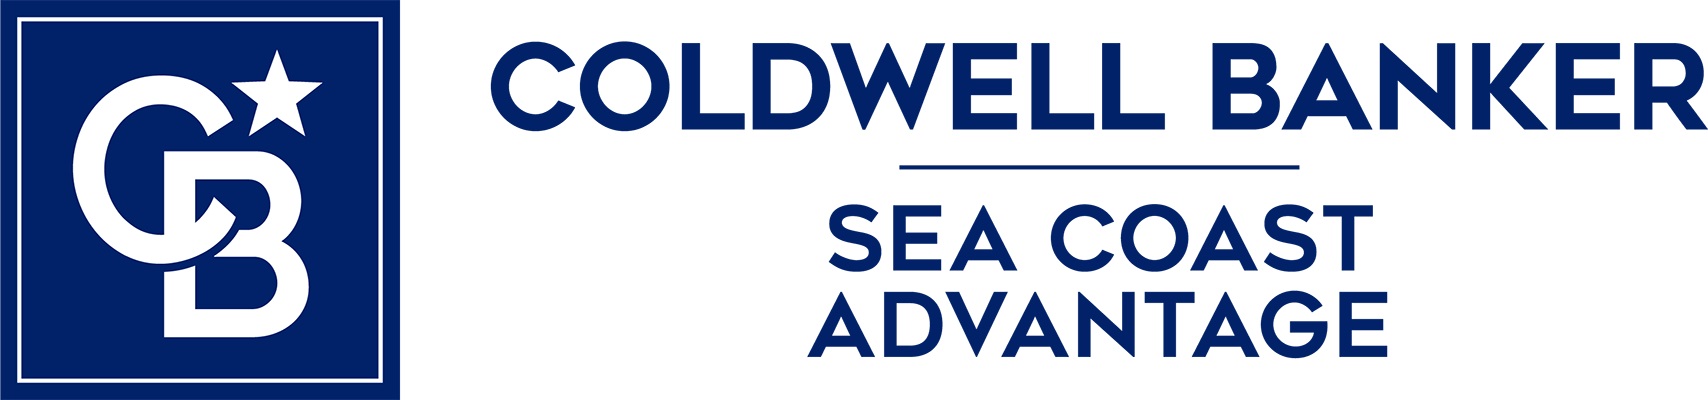 Rachel Rae - Coldwell Banker Sea Coast Advantage Realty Logo